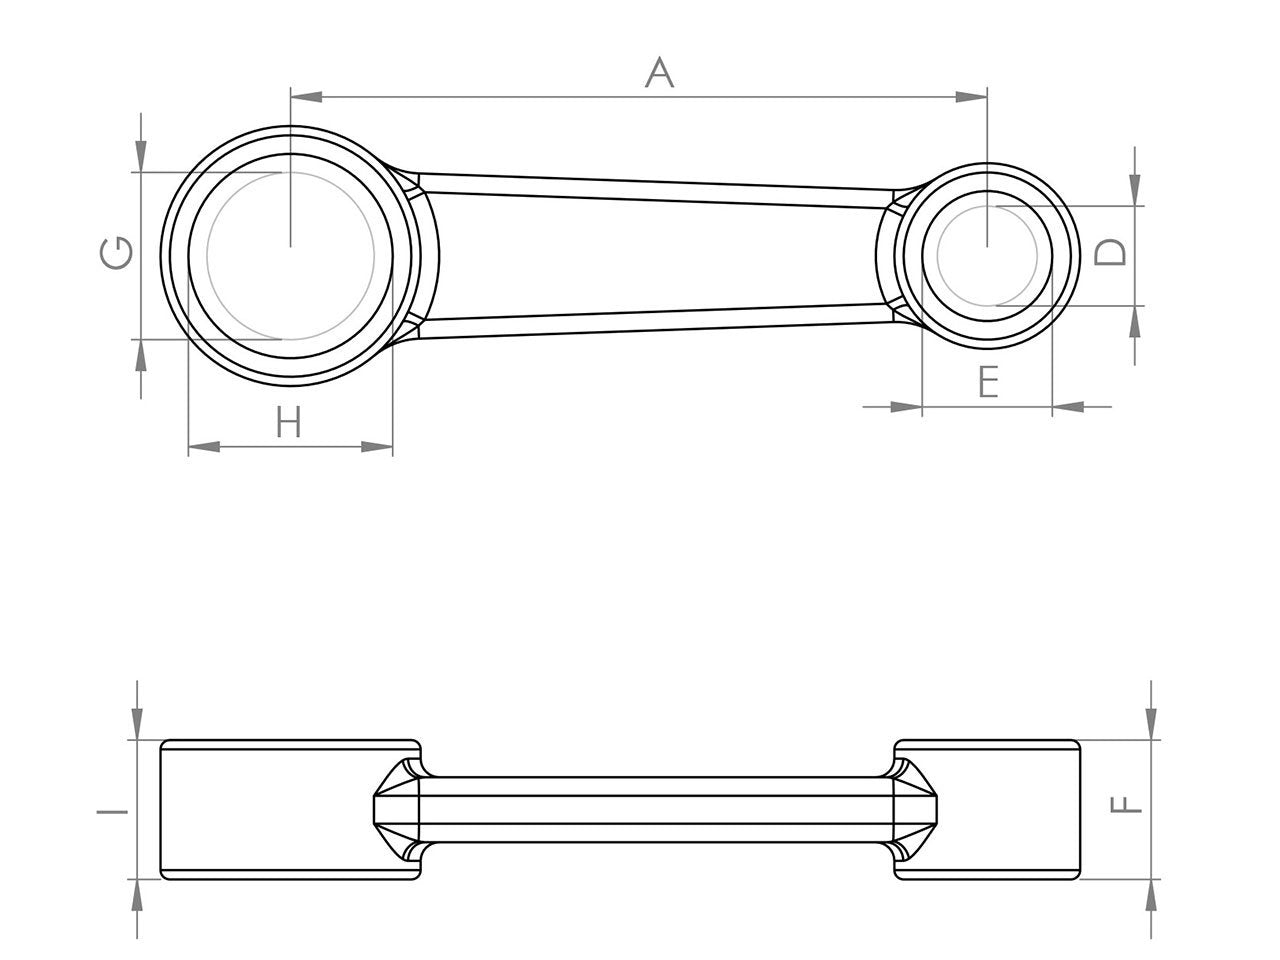 Zeichnung Barikit Pleuel für einen Zündapp Motor mit Bemaßung.